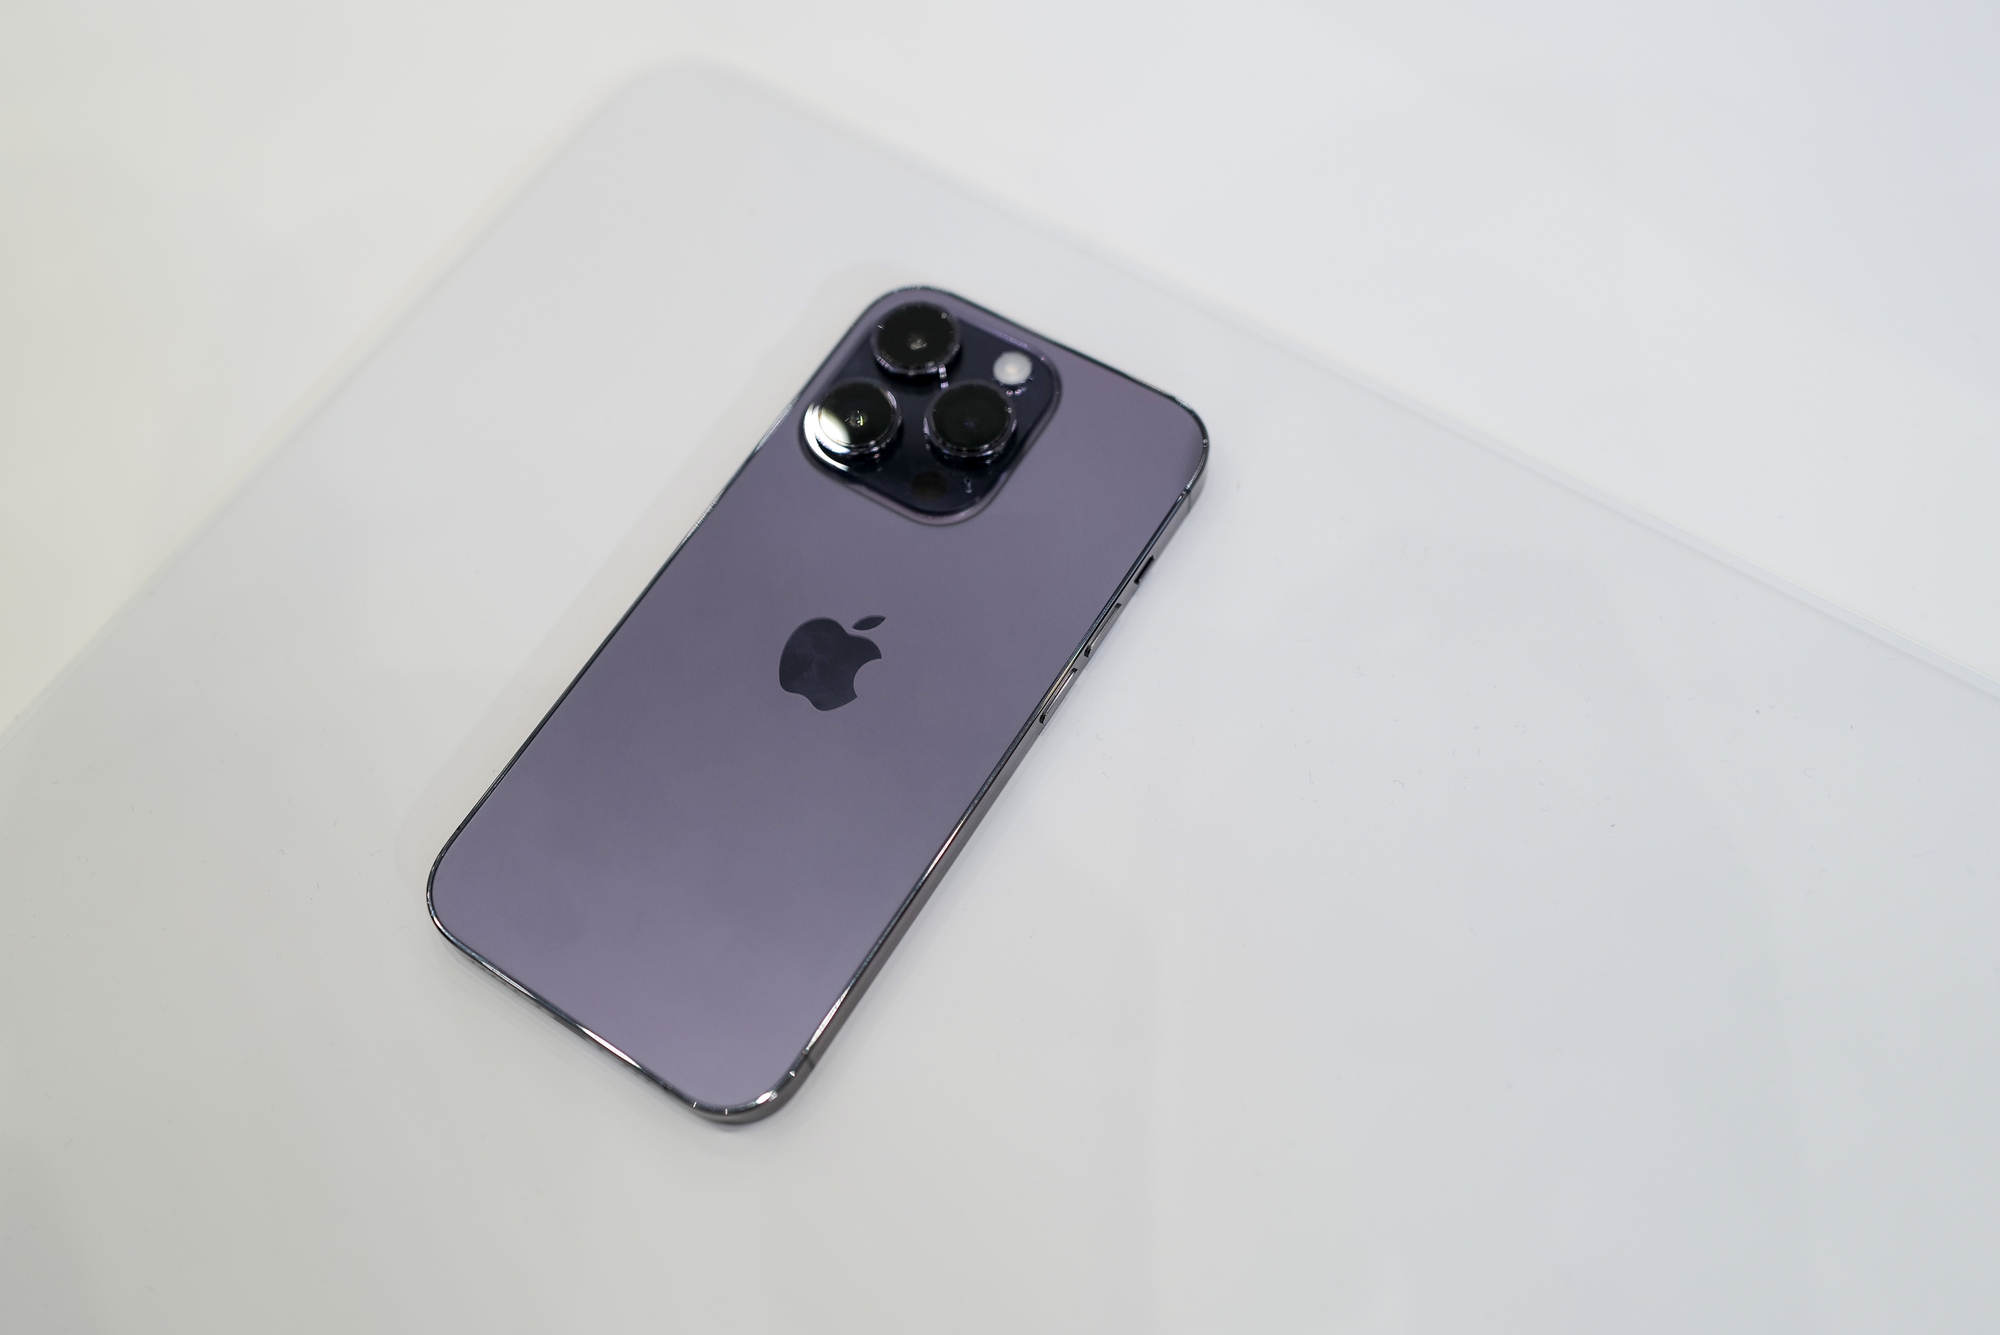 Nếu bạn muốn sở hữu một chiếc điện thoại đẳng cấp và lịch lãm, thì iPhone 14 Pro màu tím là lựa chọn hoàn hảo cho bạn. Với thiết kế tinh tế và đầy uyển chuyển, hãy xem ngay hình ảnh để cảm nhận trọn vẹn sự sang trọng của sản phẩm này.